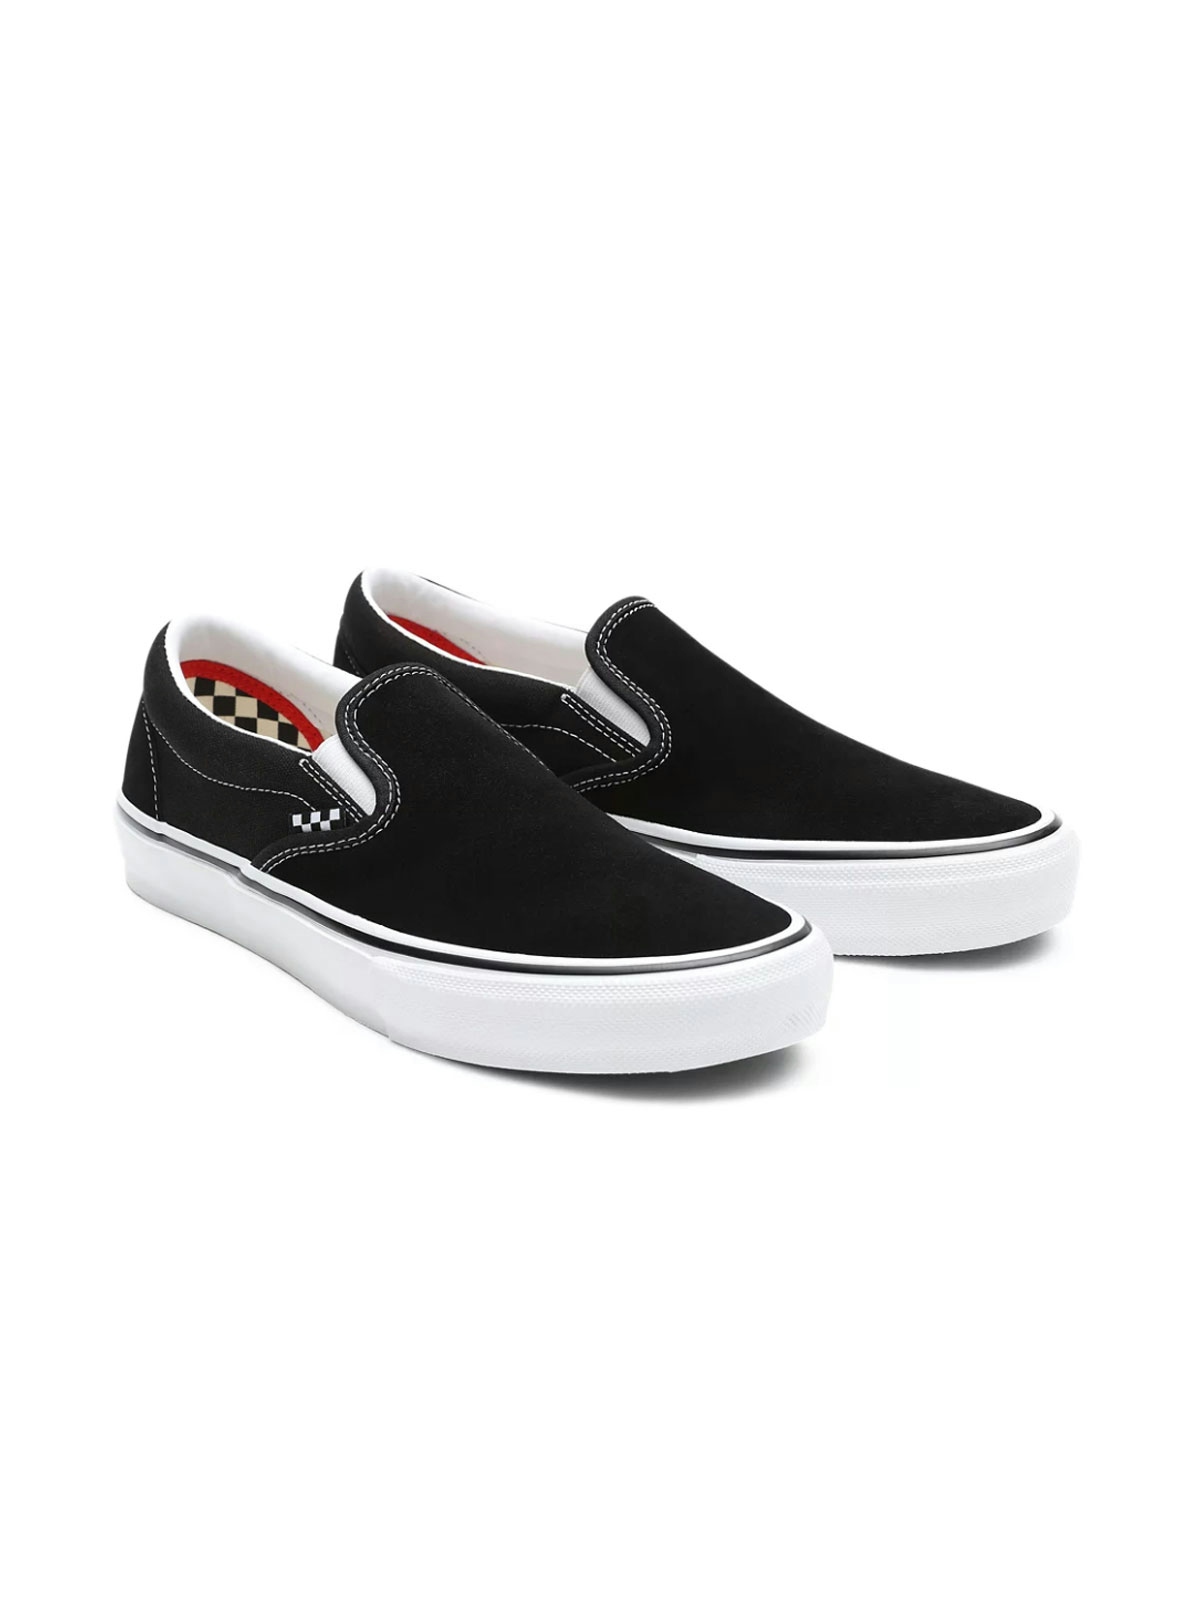 Vans Skate Slip-on Shoes Black/White 1